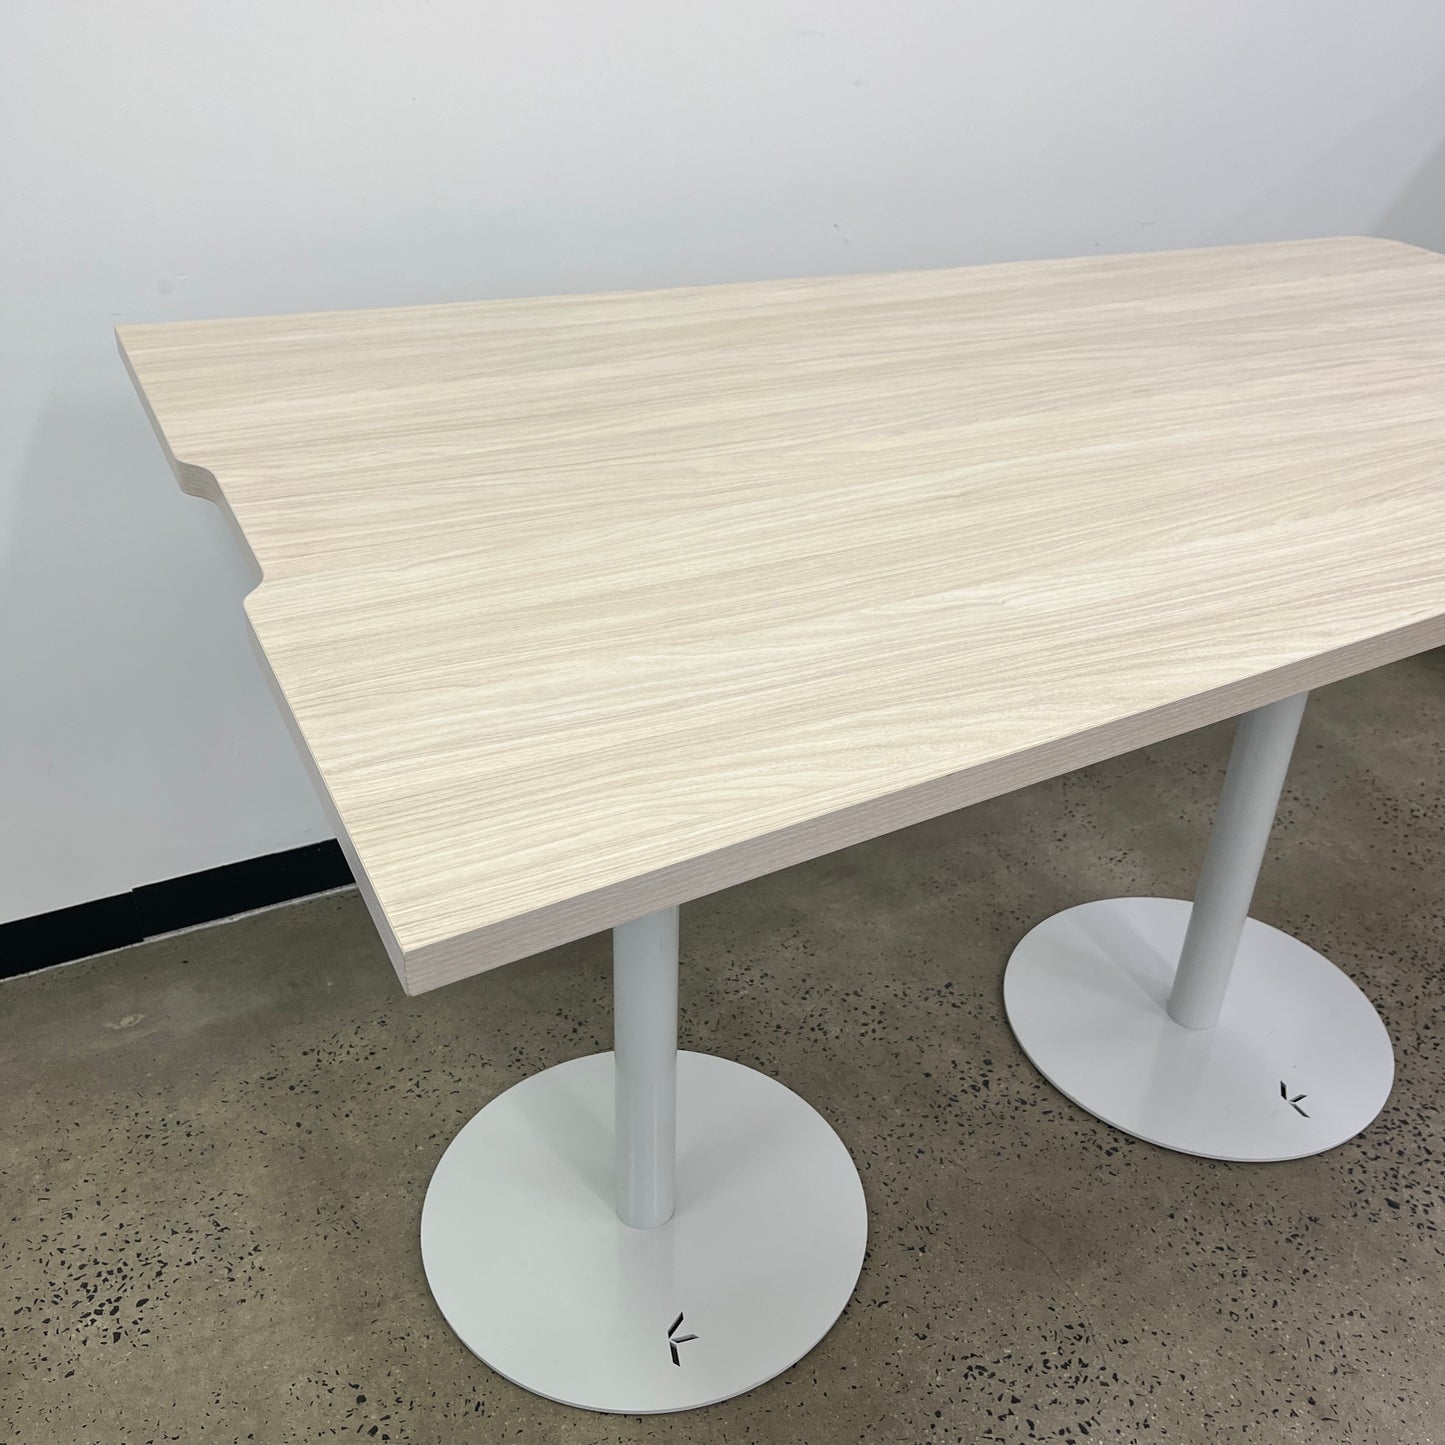 Koskela Custom Irregular Wooden Table with 2 Round Base